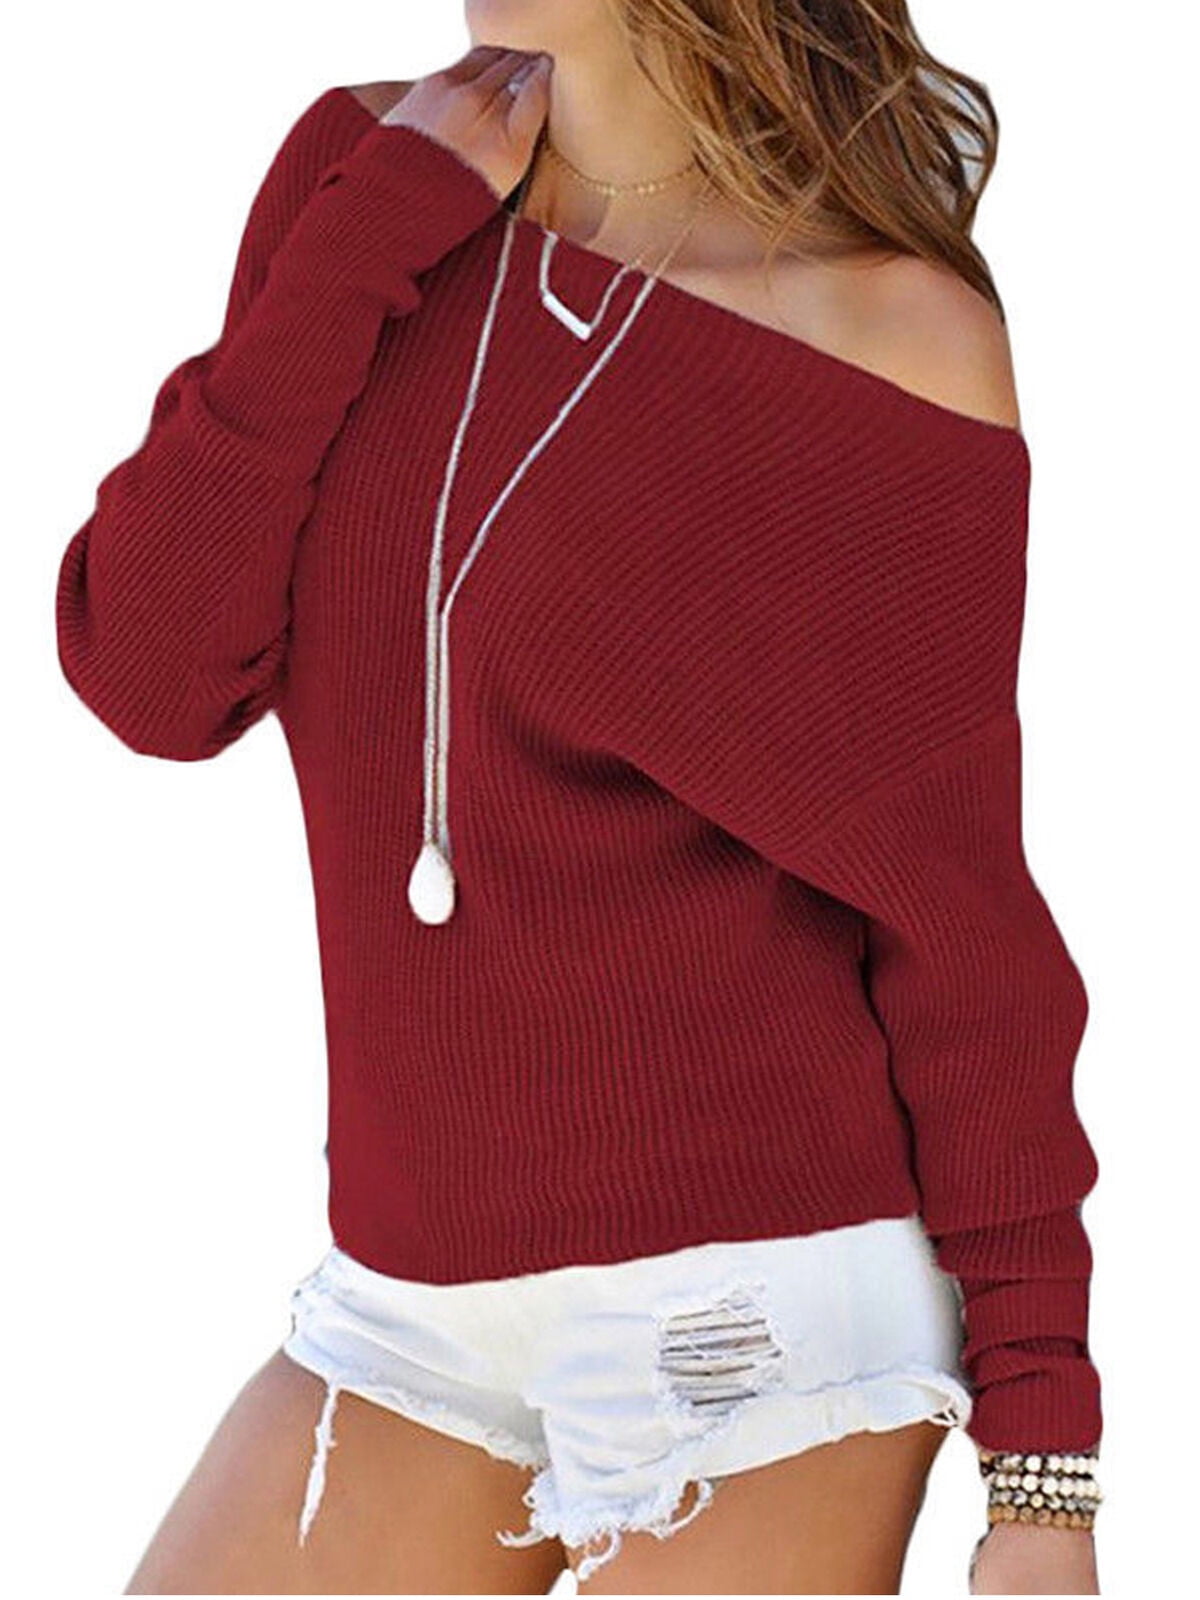 luethbiezx - One Shoulder Sweaters Women Autumn Pure Color Autumn Warm ...